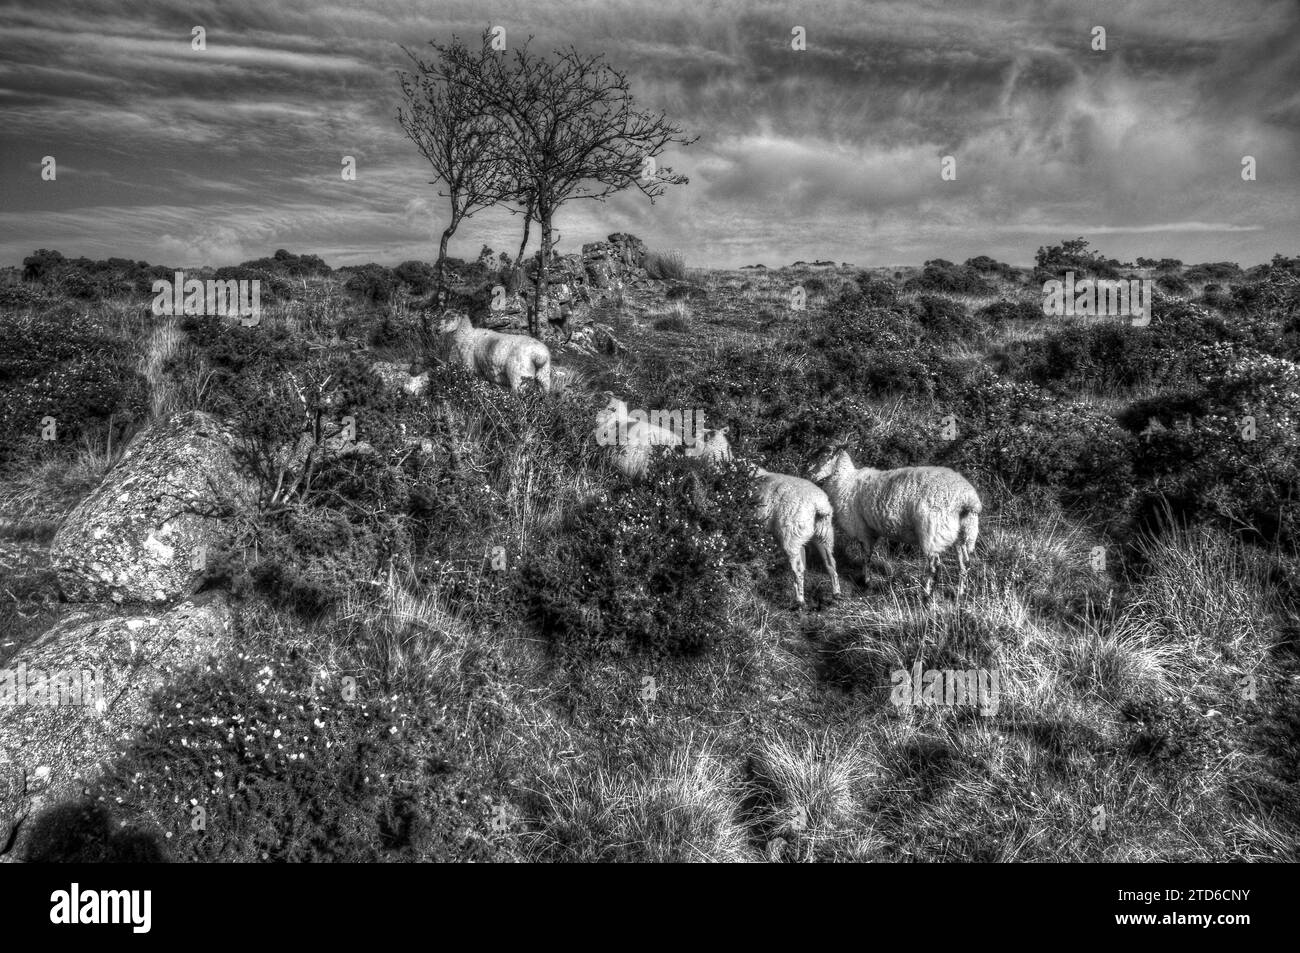 Quatre moutons sur Wistman's Wood, Dartmoor, Devon. ROYAUME-UNI. Photographie en noir et blanc. Banque D'Images